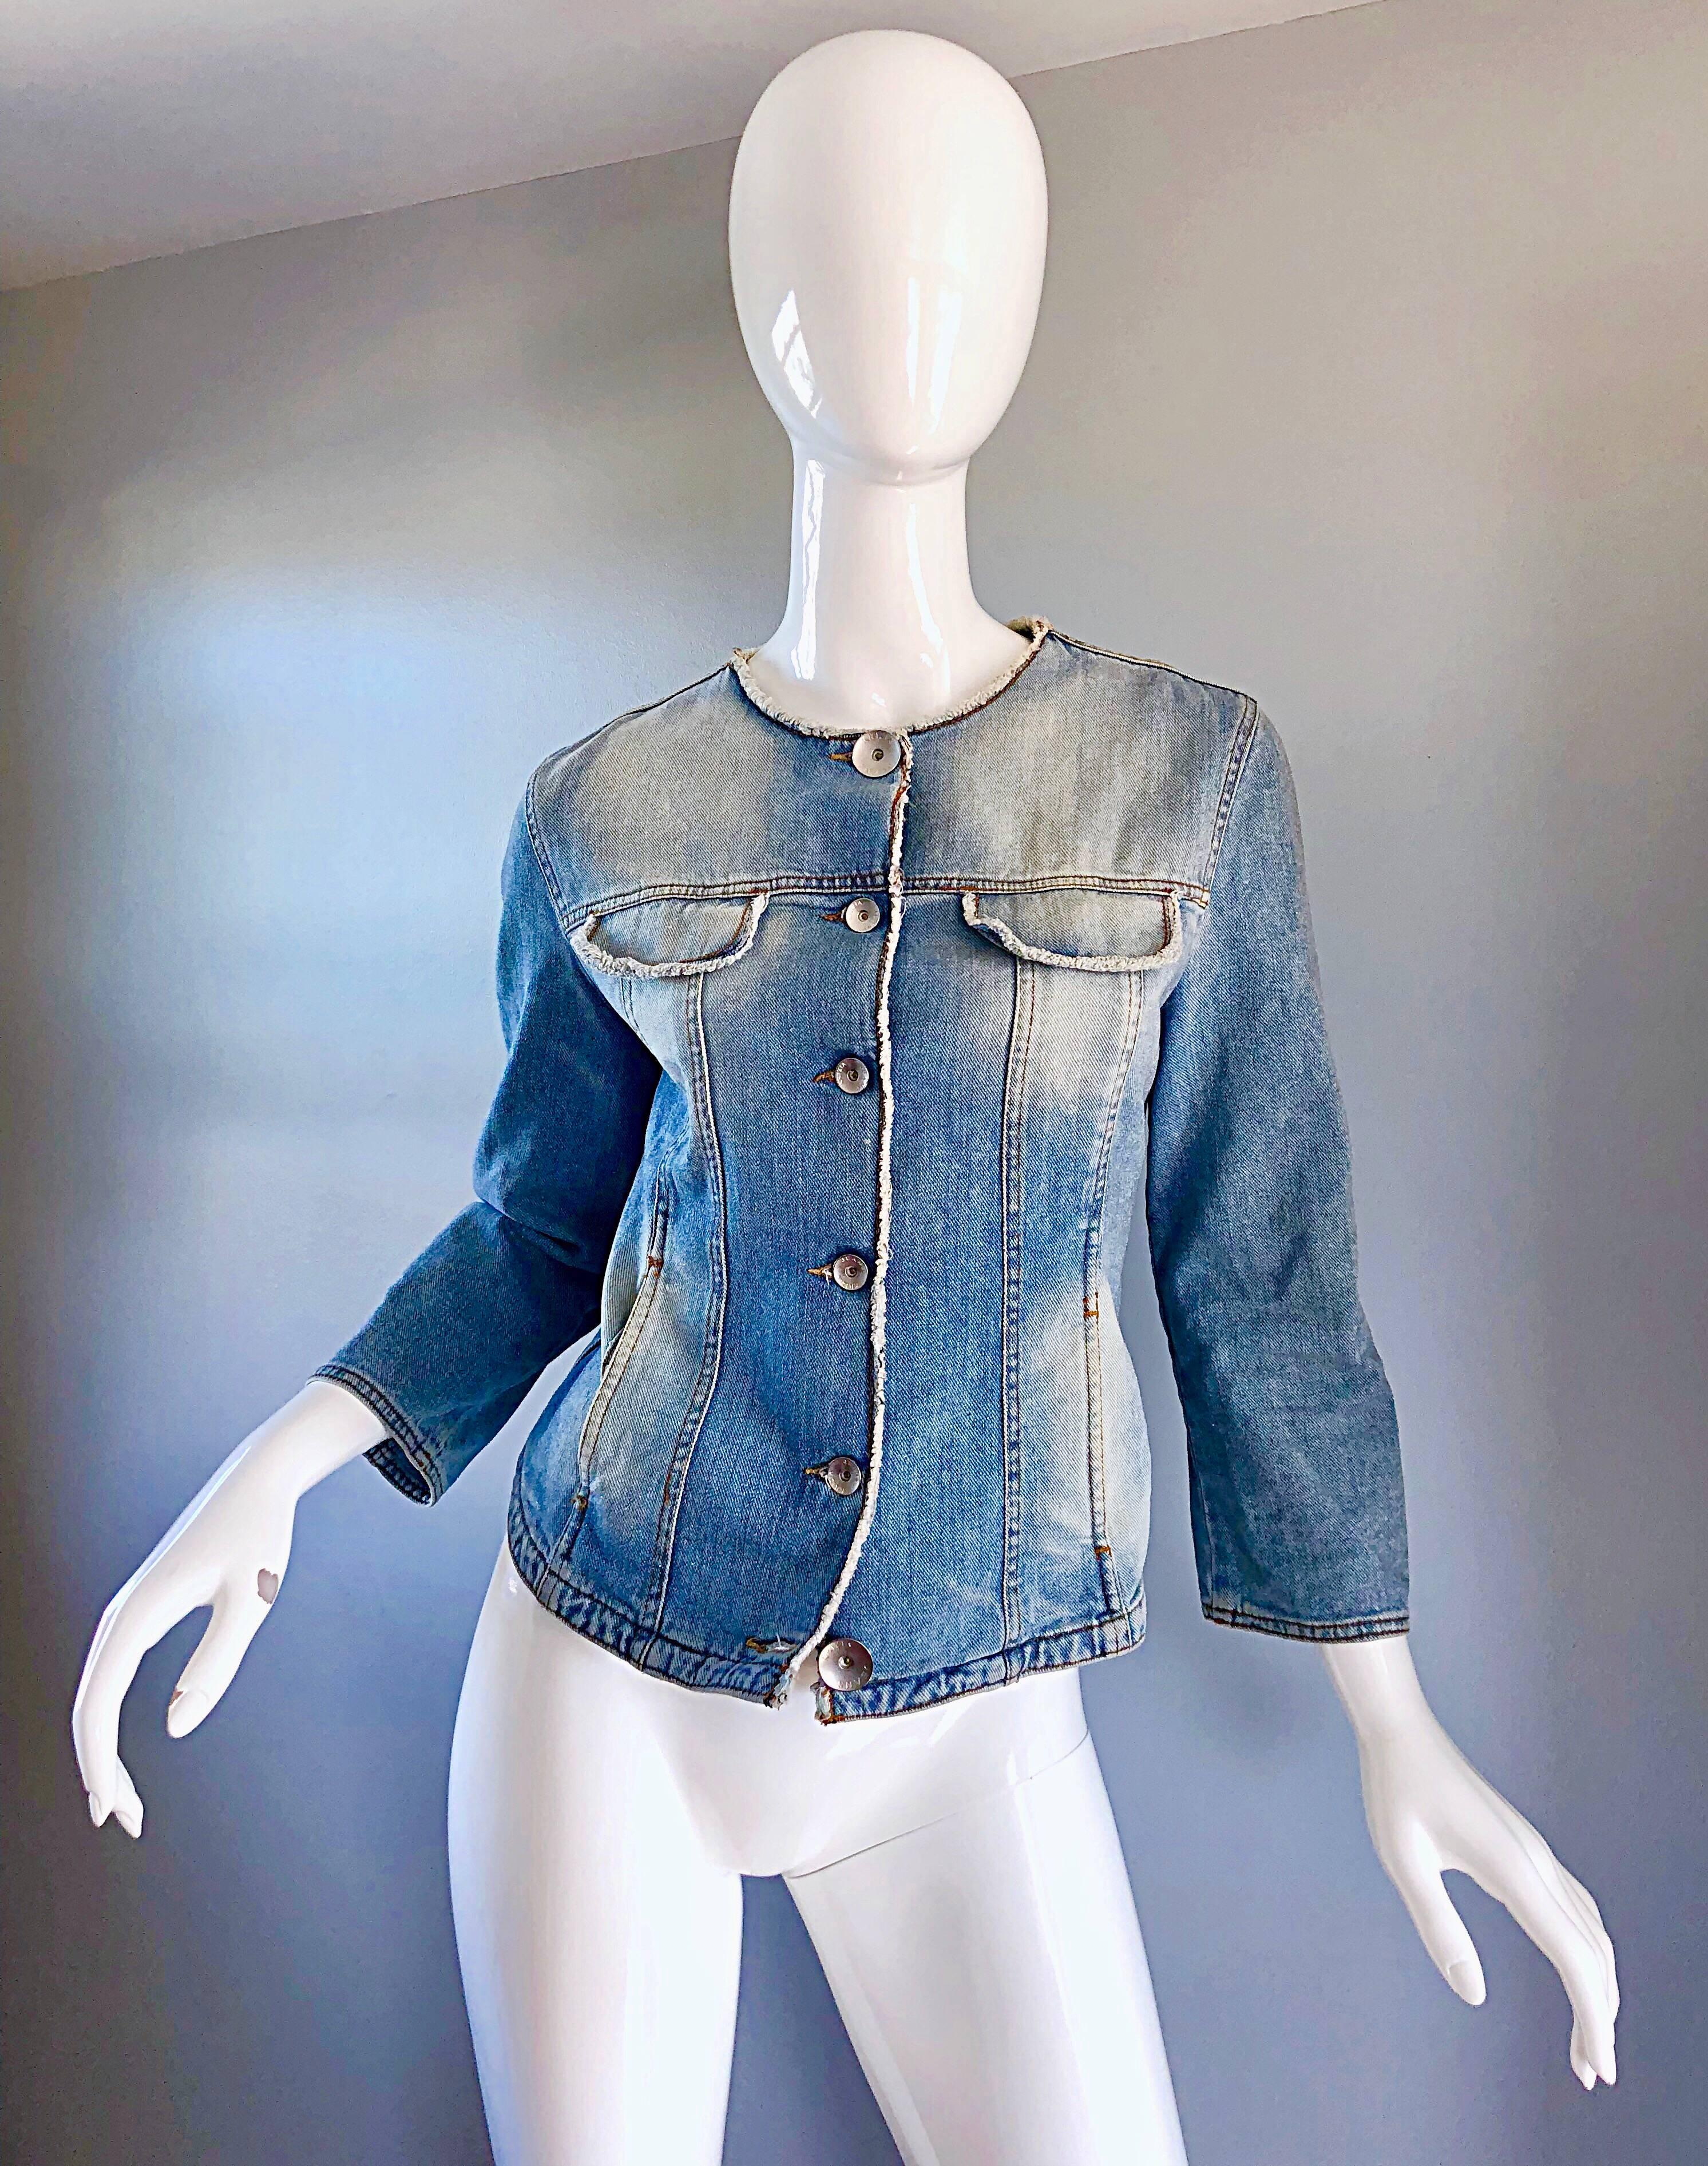 Erstaunlich schicke Vintage-Jacke aus den frühen 90er Jahren von KRIZIA aus blauer Jeans mit Glitzer! Der hellblaue, sandgestrahlte Denim ist mit einer glitzernden Beschichtung überzogen (auf den Fotos kaum zu erkennen, aber in natura umwerfend).